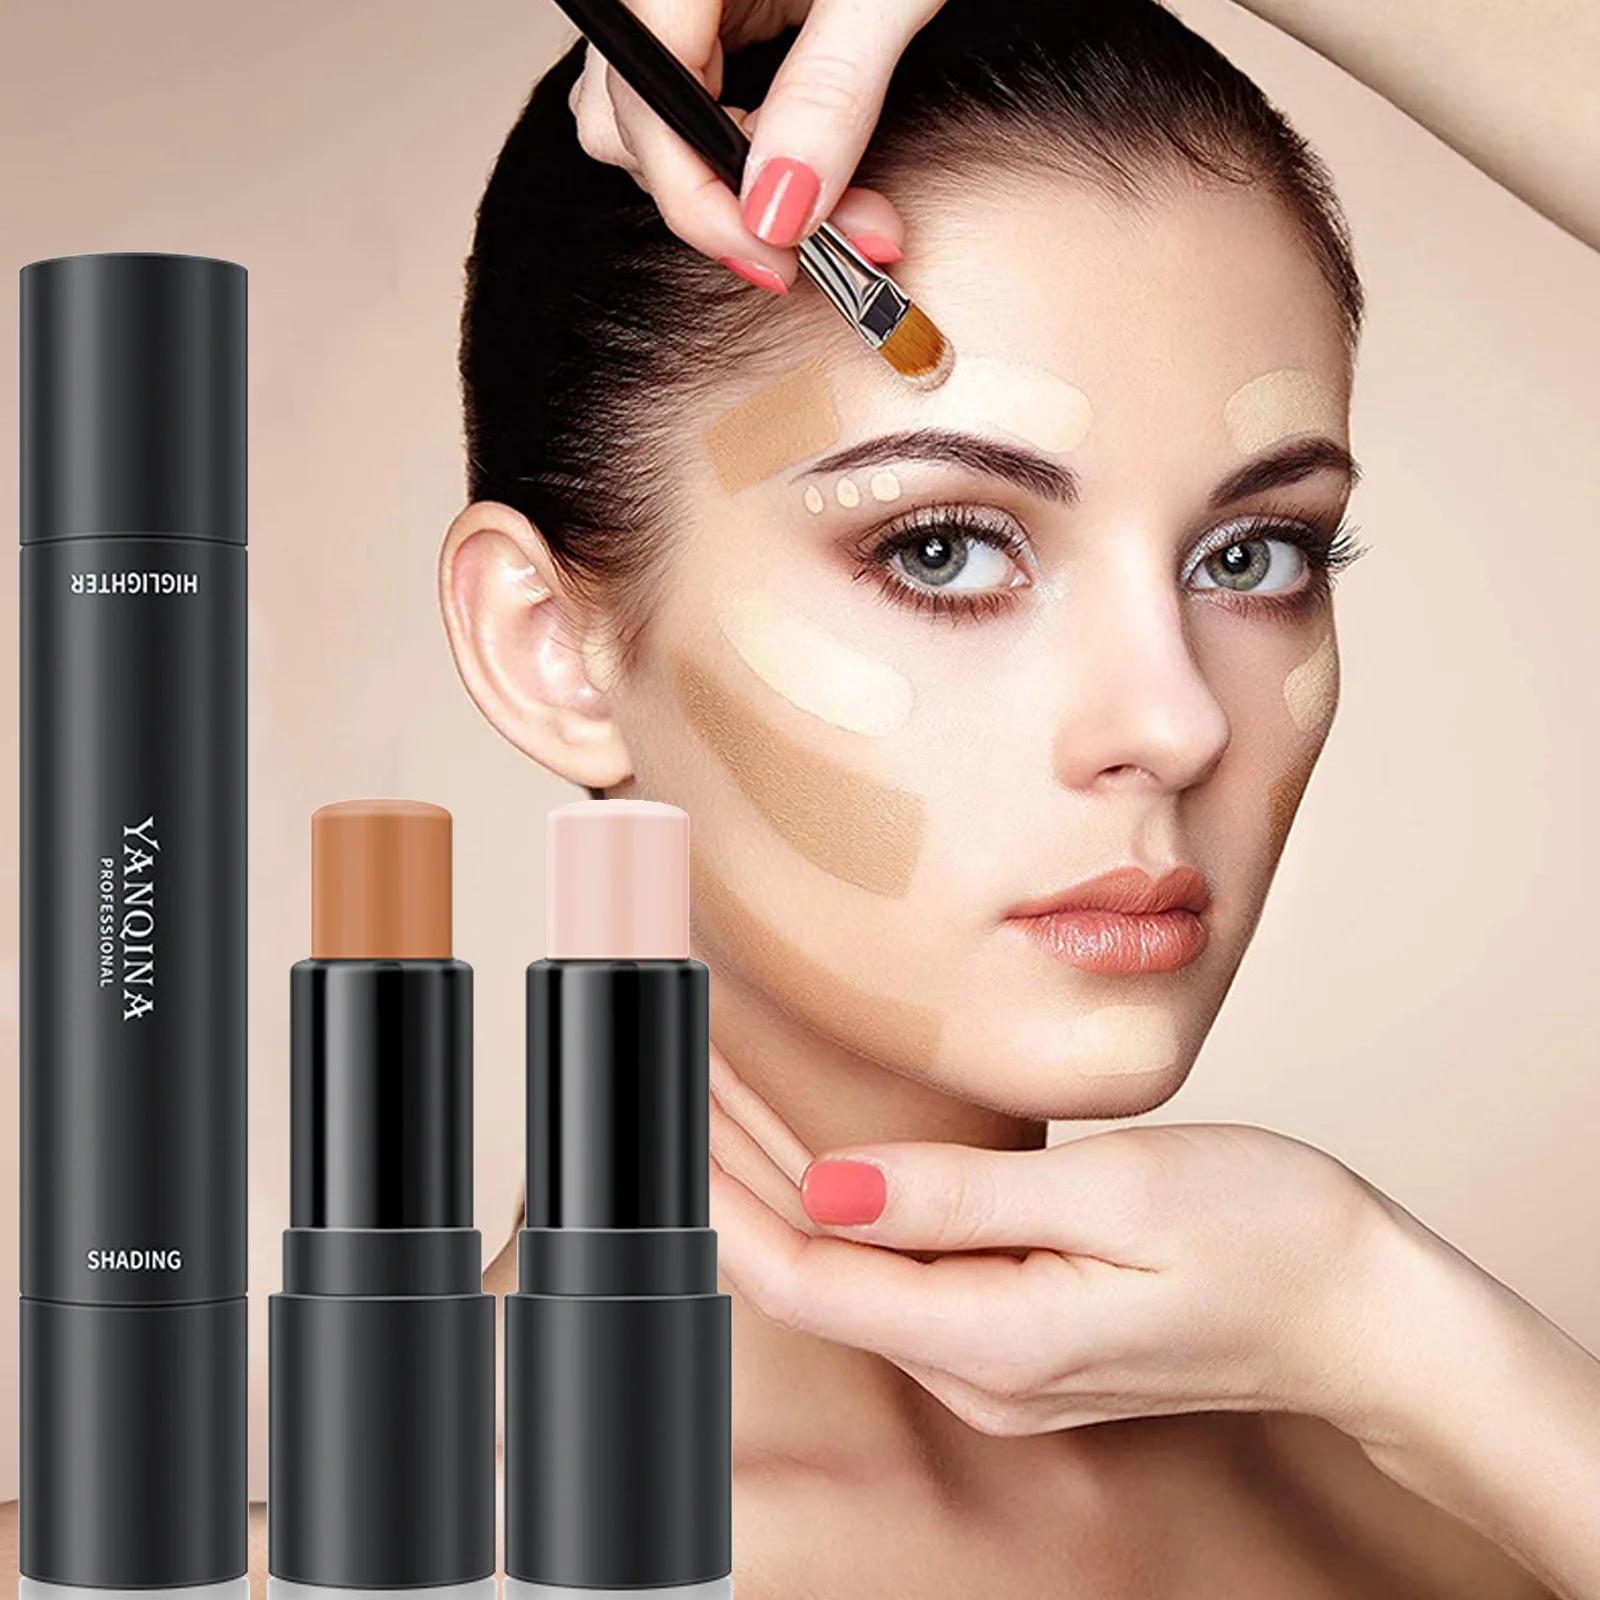 

1Pcs Concealer Stick Foundation Full Coverage Contour Facial Makeup Base Primer Moisturizer Blemish Concealer Makeup for Women